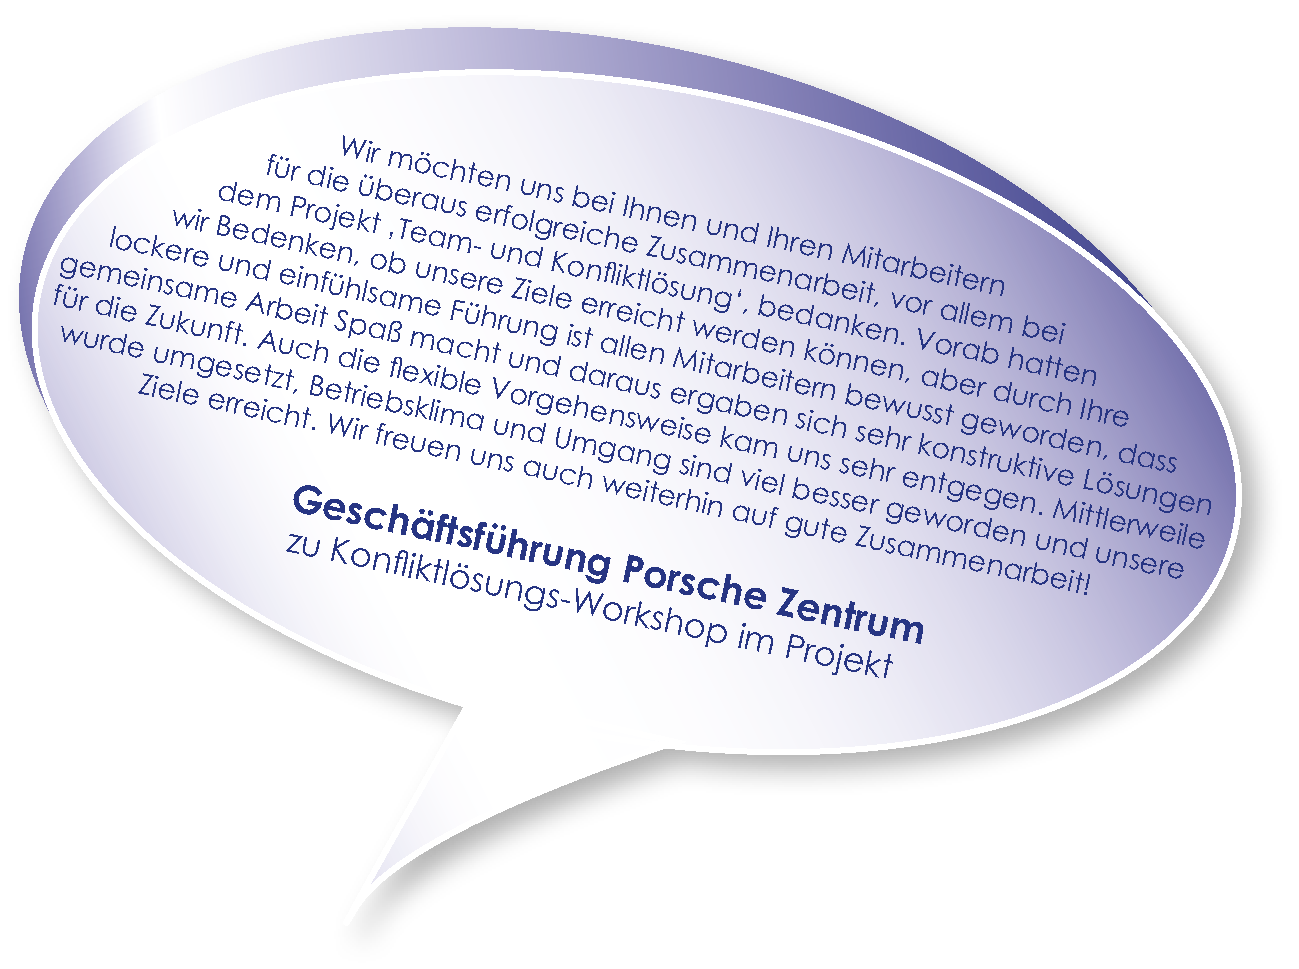 Testimonial der Geschäftsführung Porsche Zentrum zum Workshop Konfliktlösung mit Melters und Partner